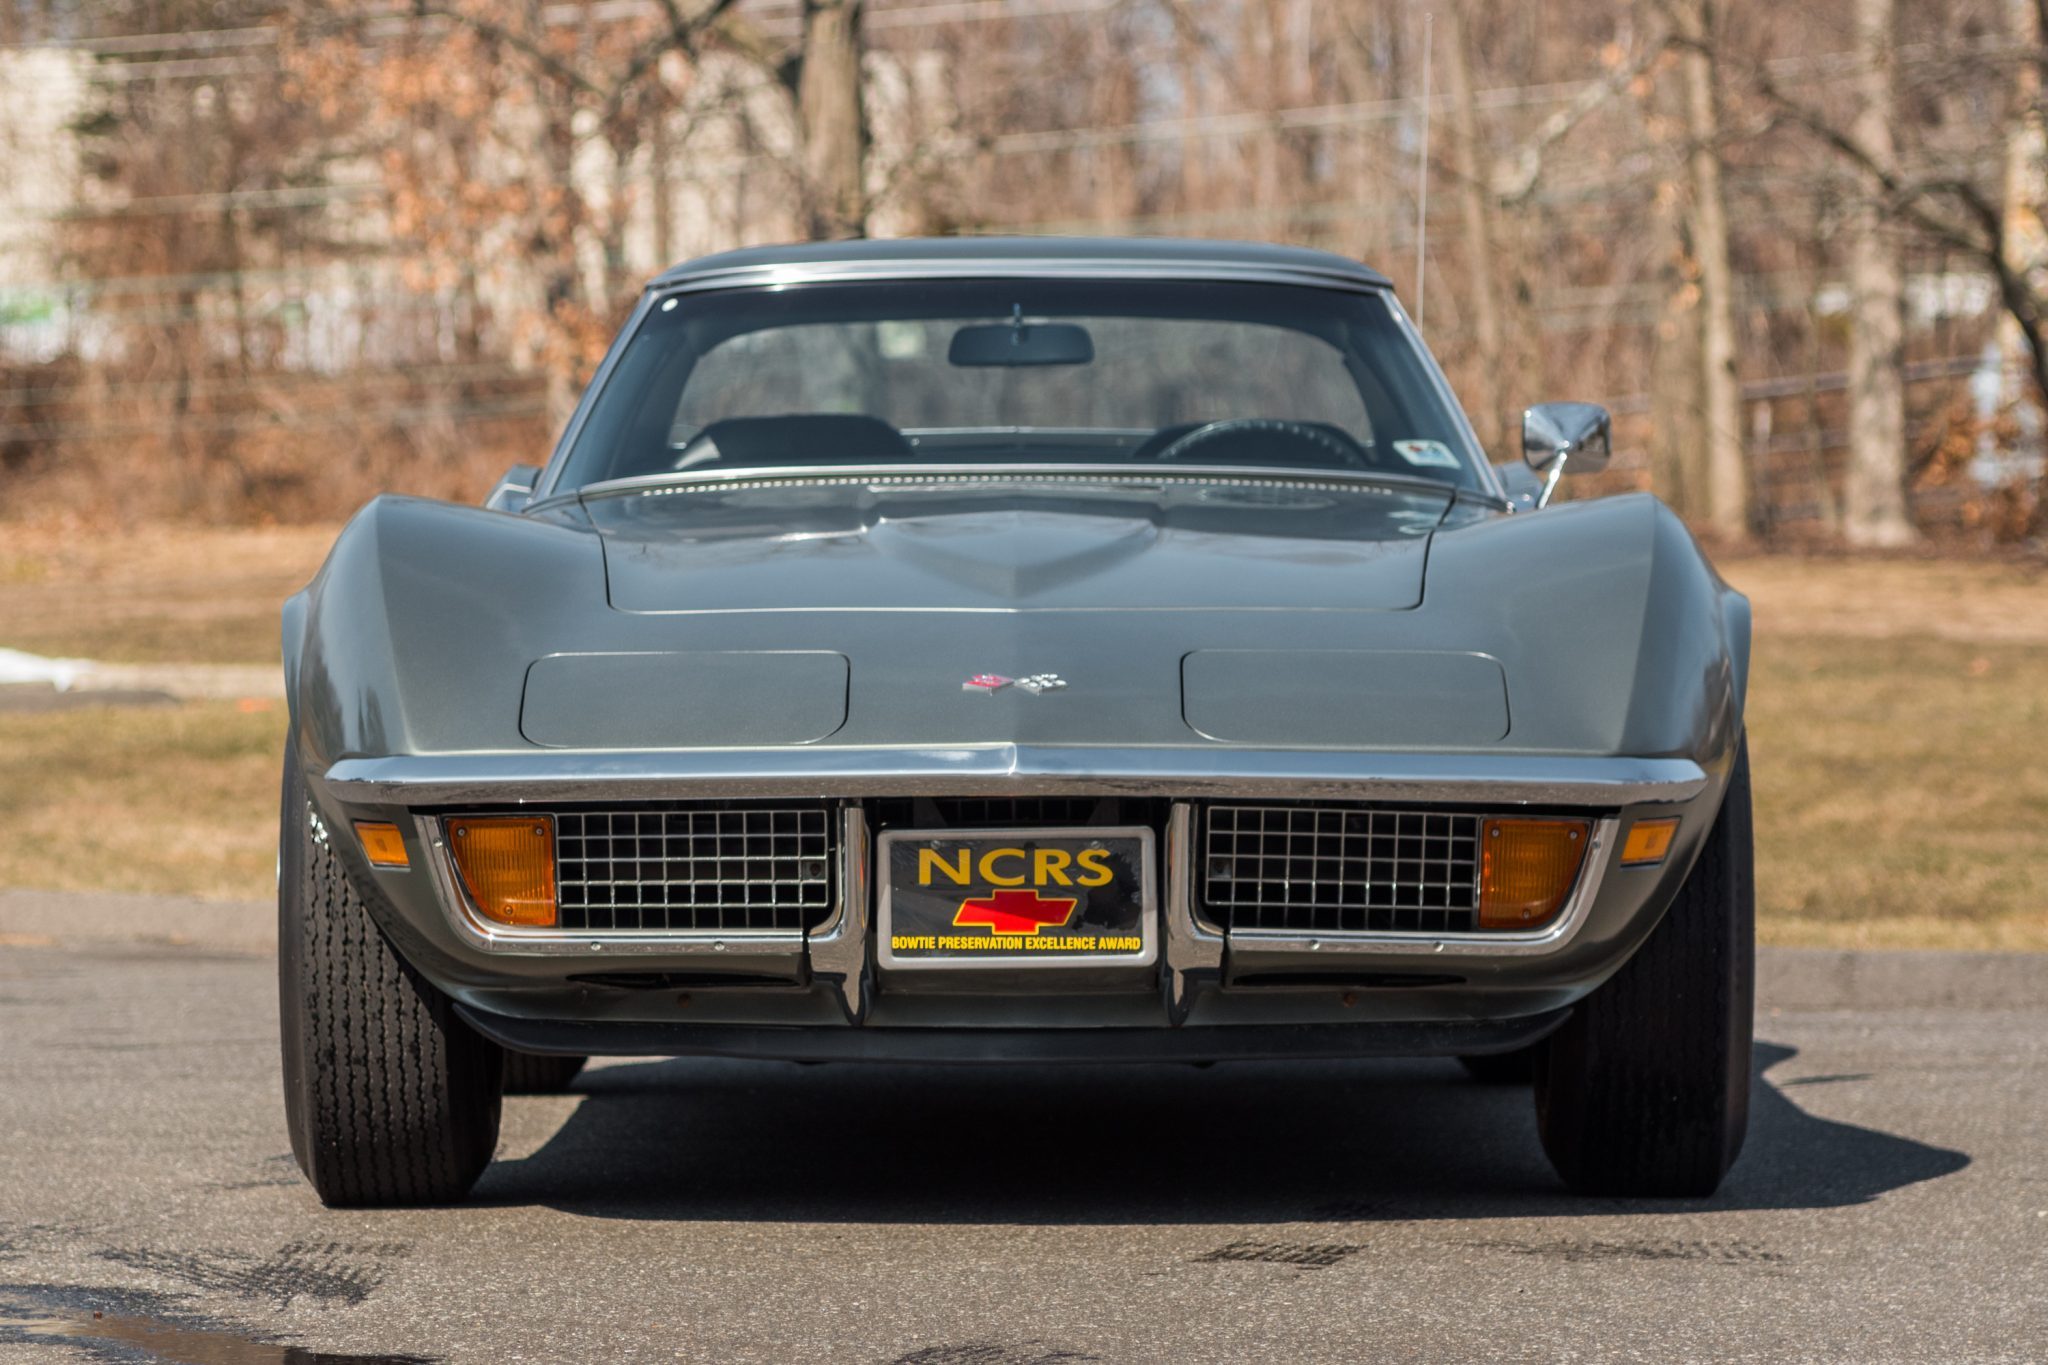 1972 Corvette Convertible in Steel Cities Gray